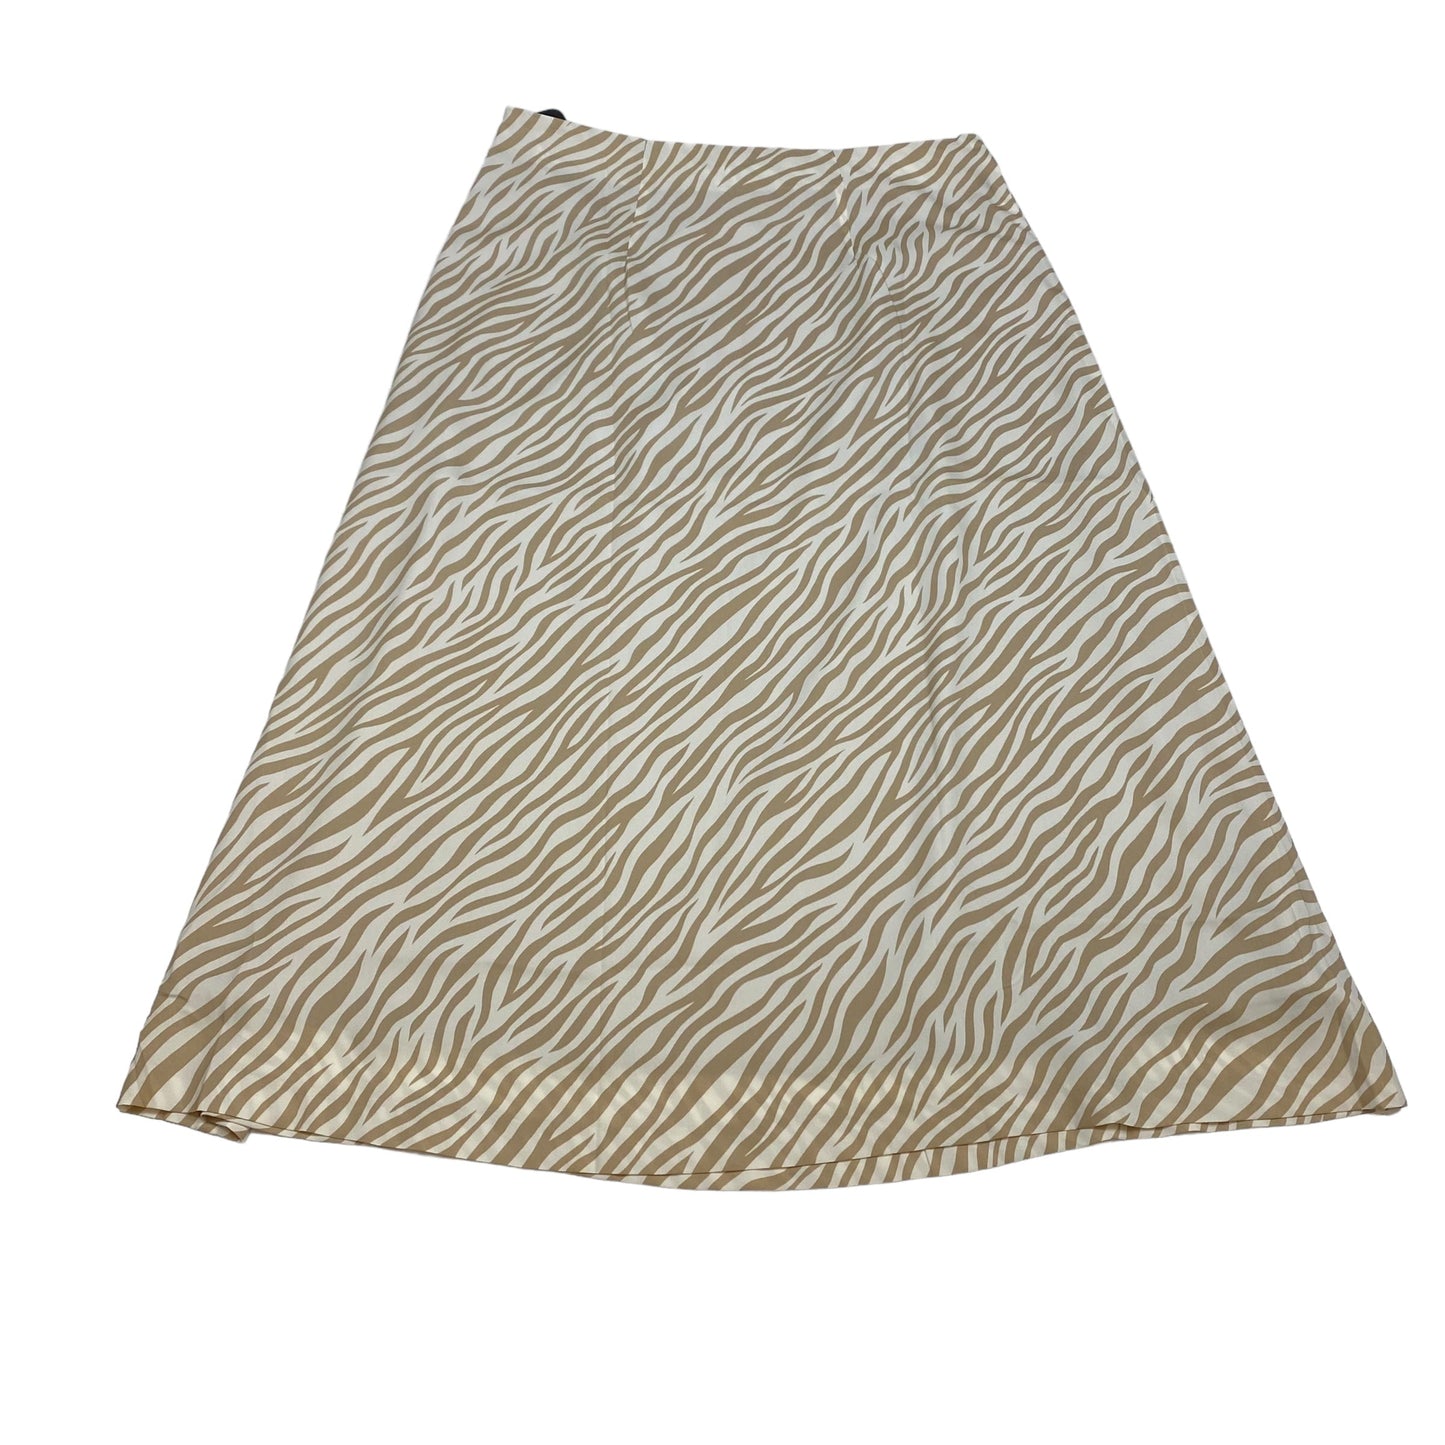 Tan & White Skirt Midi Ann Taylor, Size M